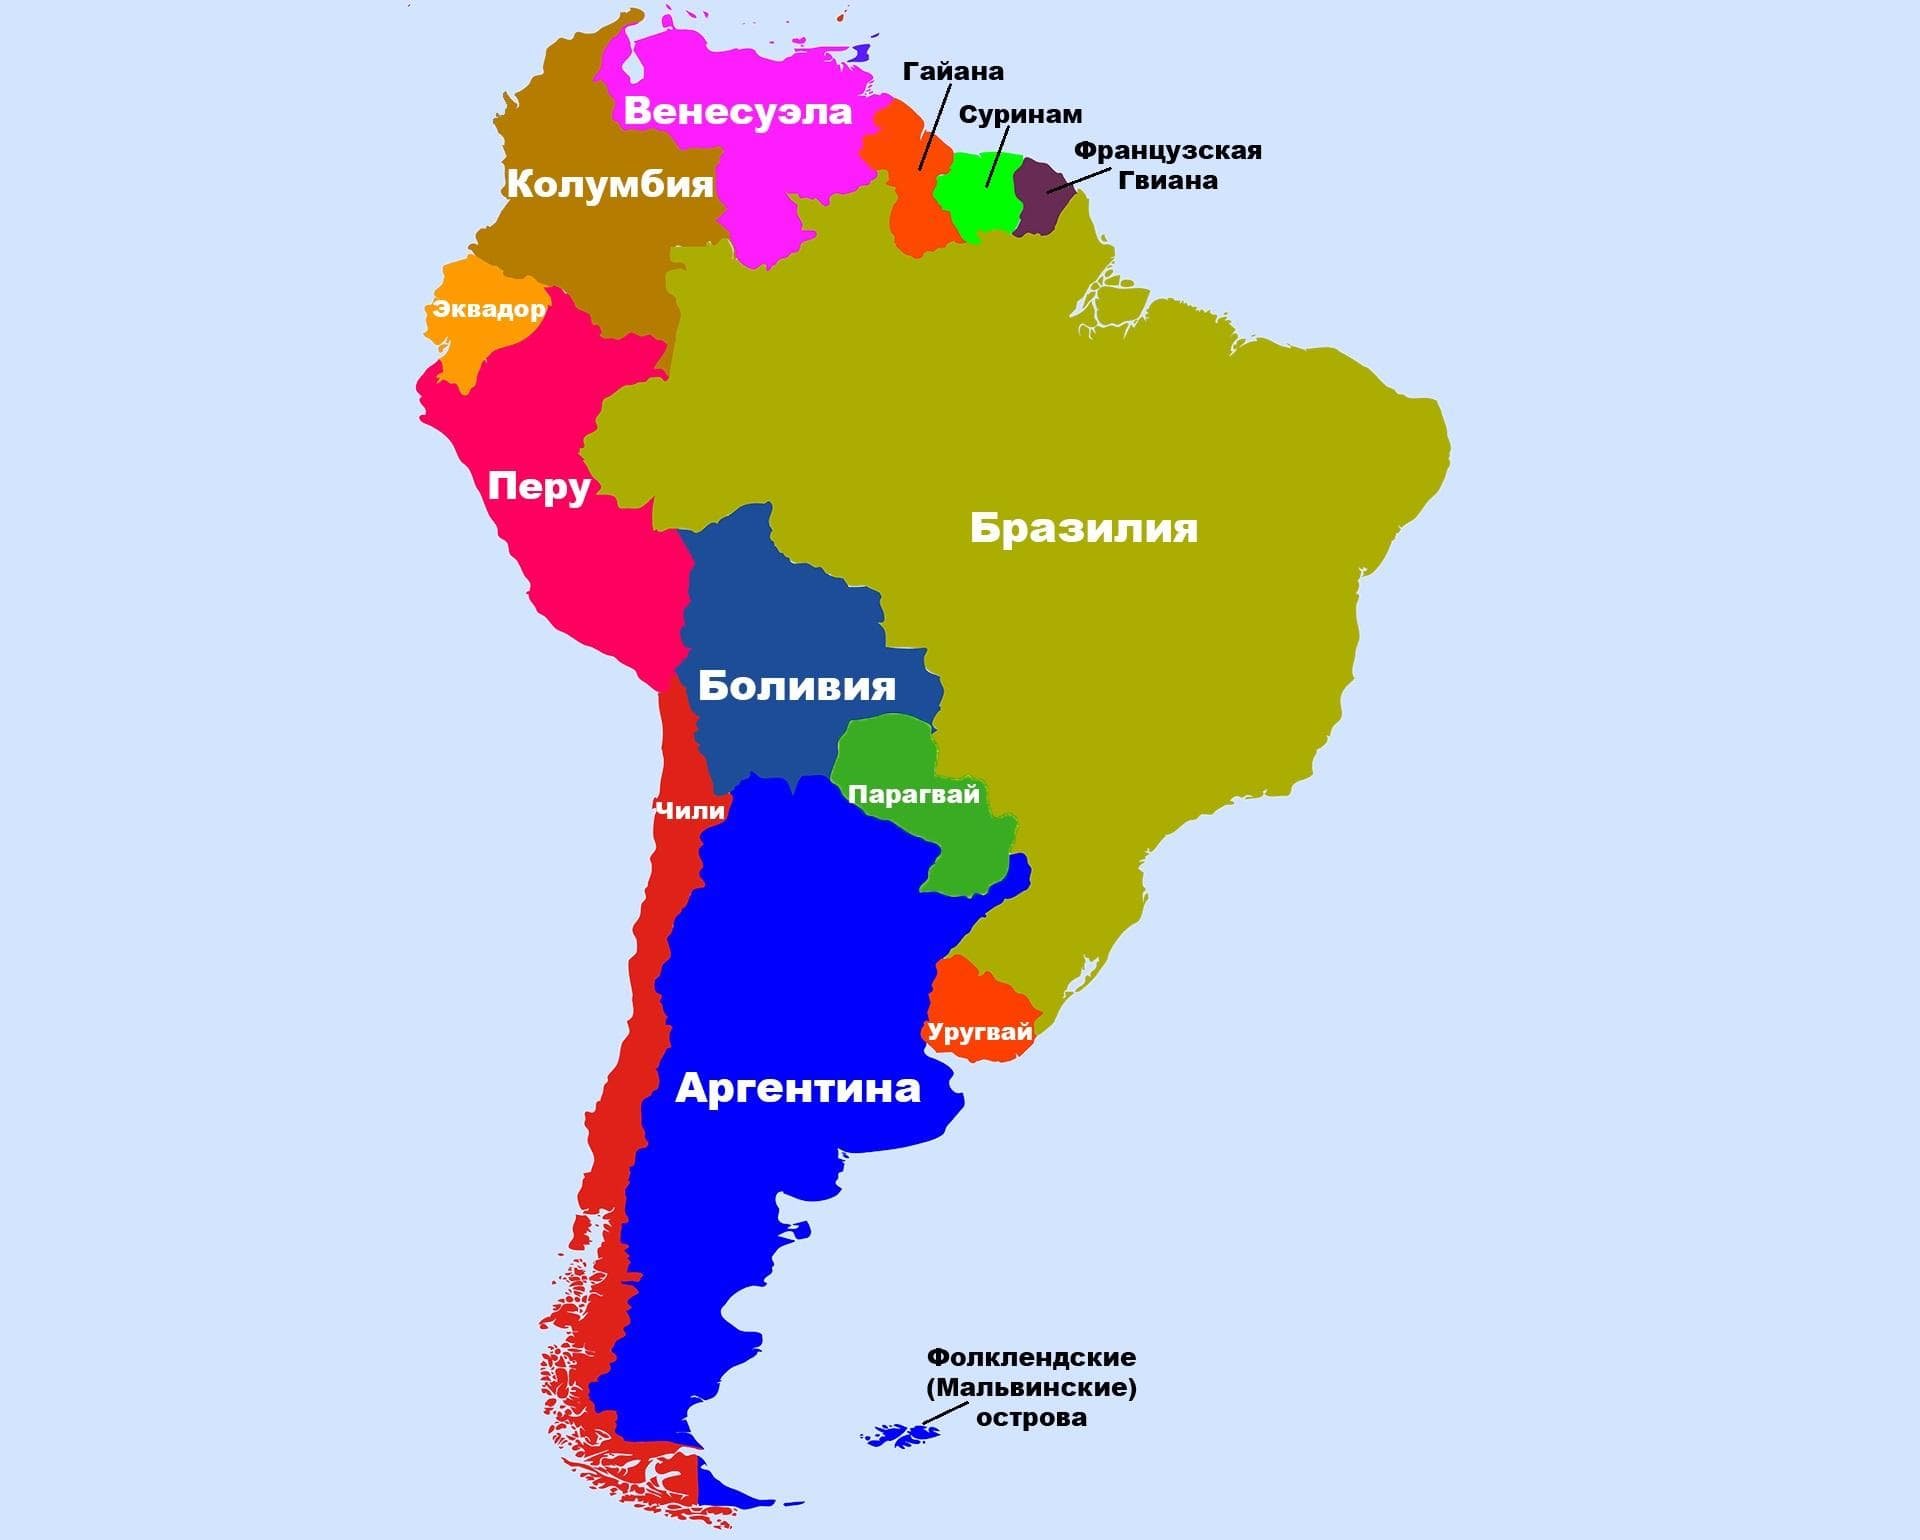 Карта Южной Америки политическая на русском языке со странами. Южная Америка на карте со странами и столицами на русском. Политическая карта Южной Америки со столицами. Южная Америка политическая карта на русском.